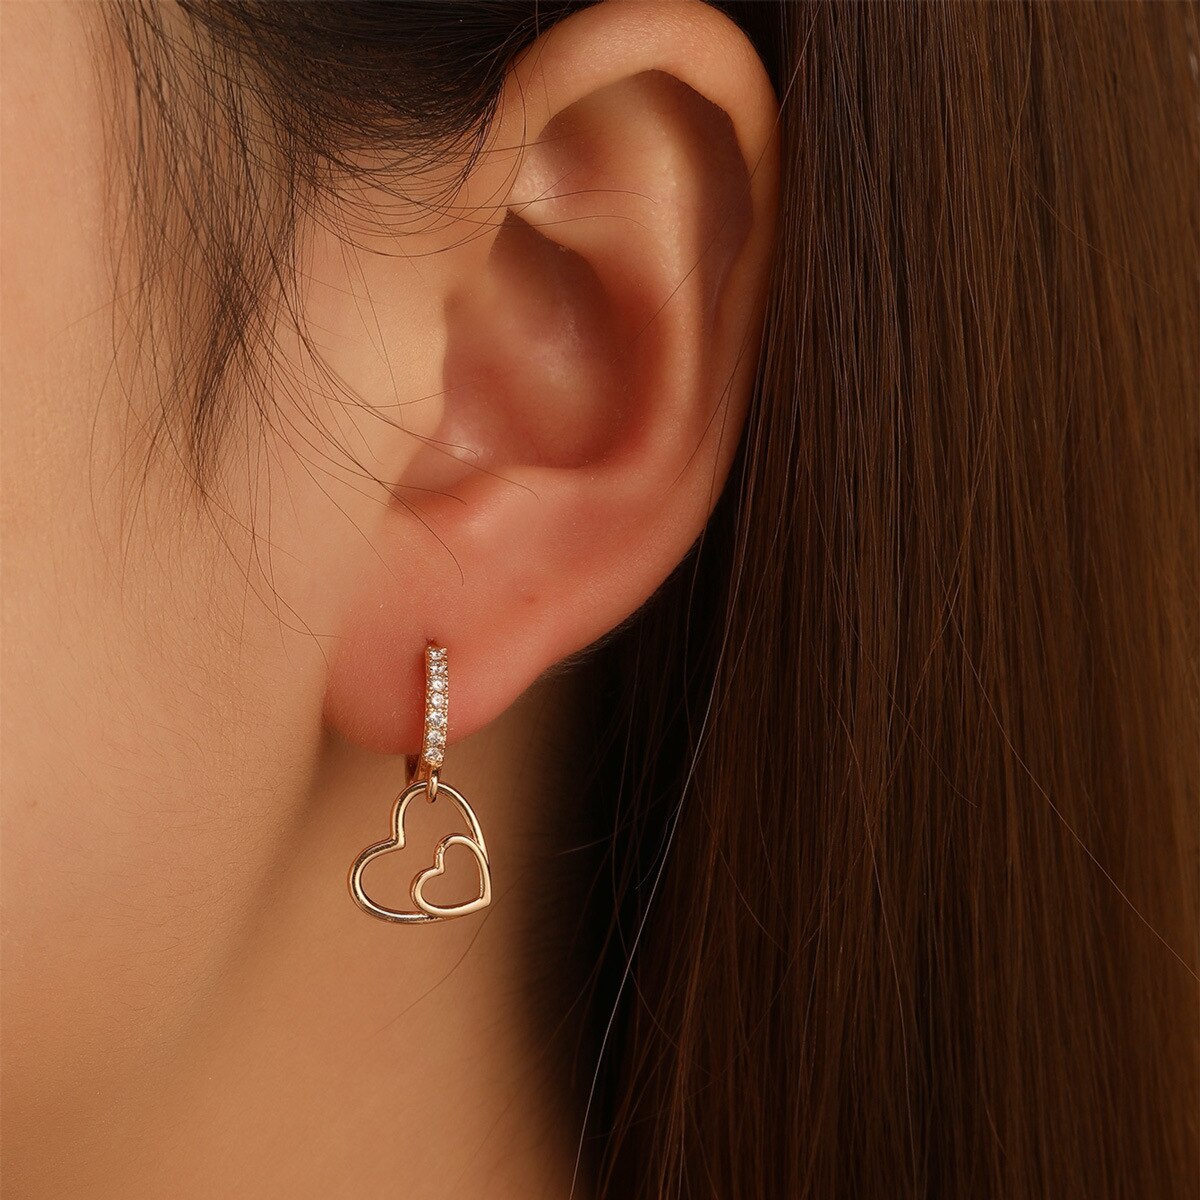 New Fashion Earring Shiny Copper Zircon Women Earrings Geometric Heart-shaped Drop Piercing Earrings for Women Jewelry Gift daiiibabyyy